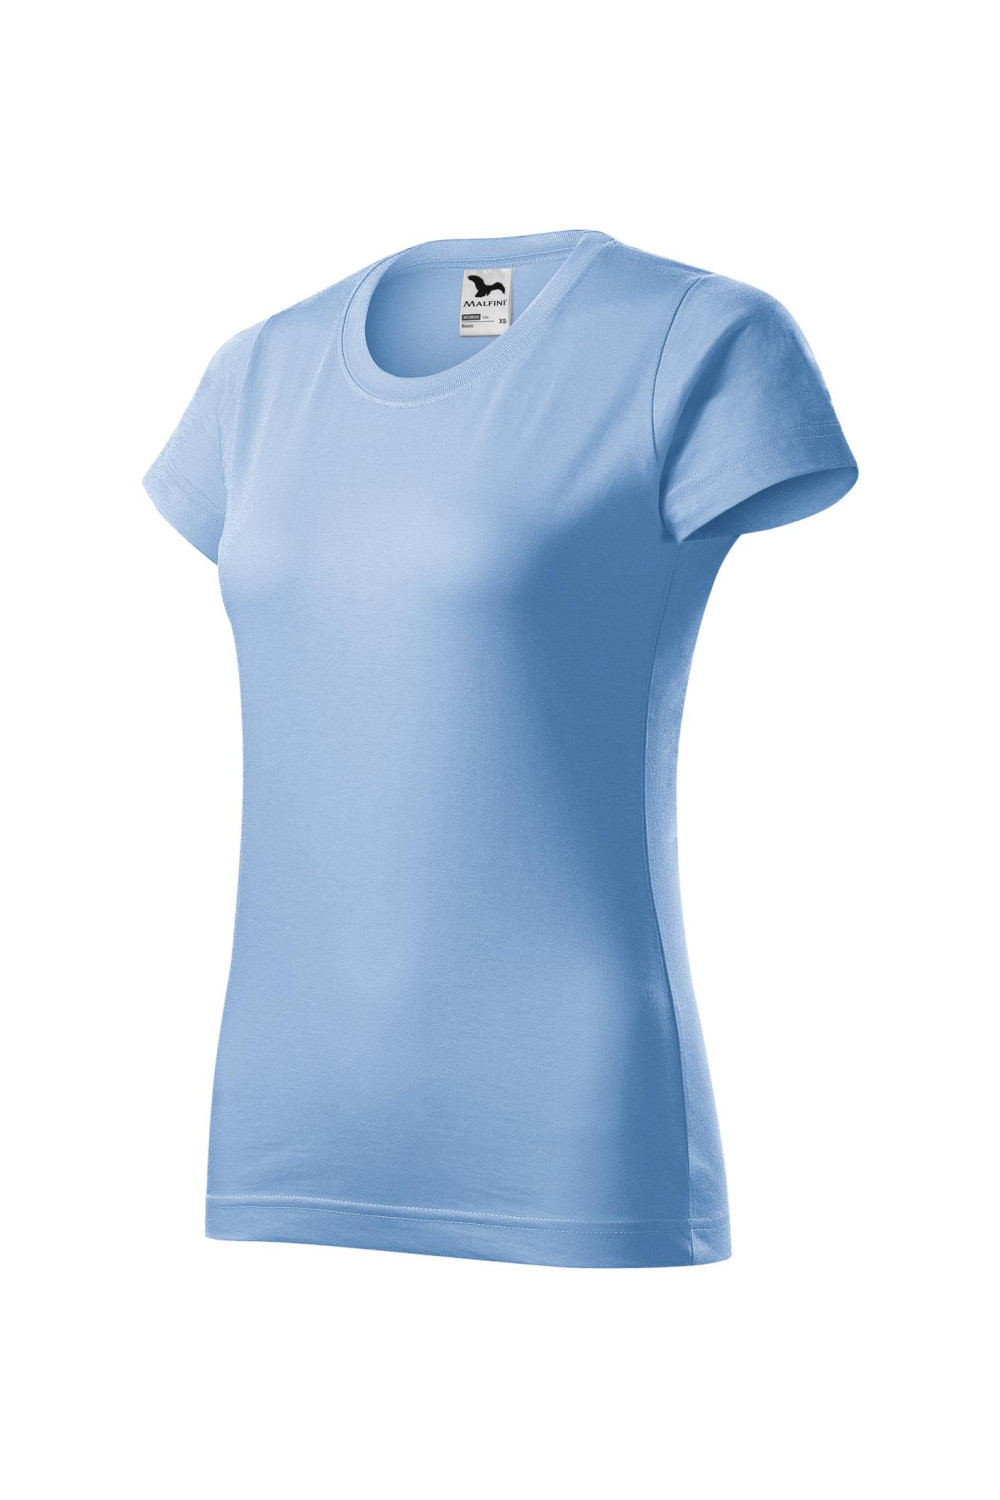 BASIC 134 MALFINI Koszulka damska 100% bawełna t-shirt błękitny